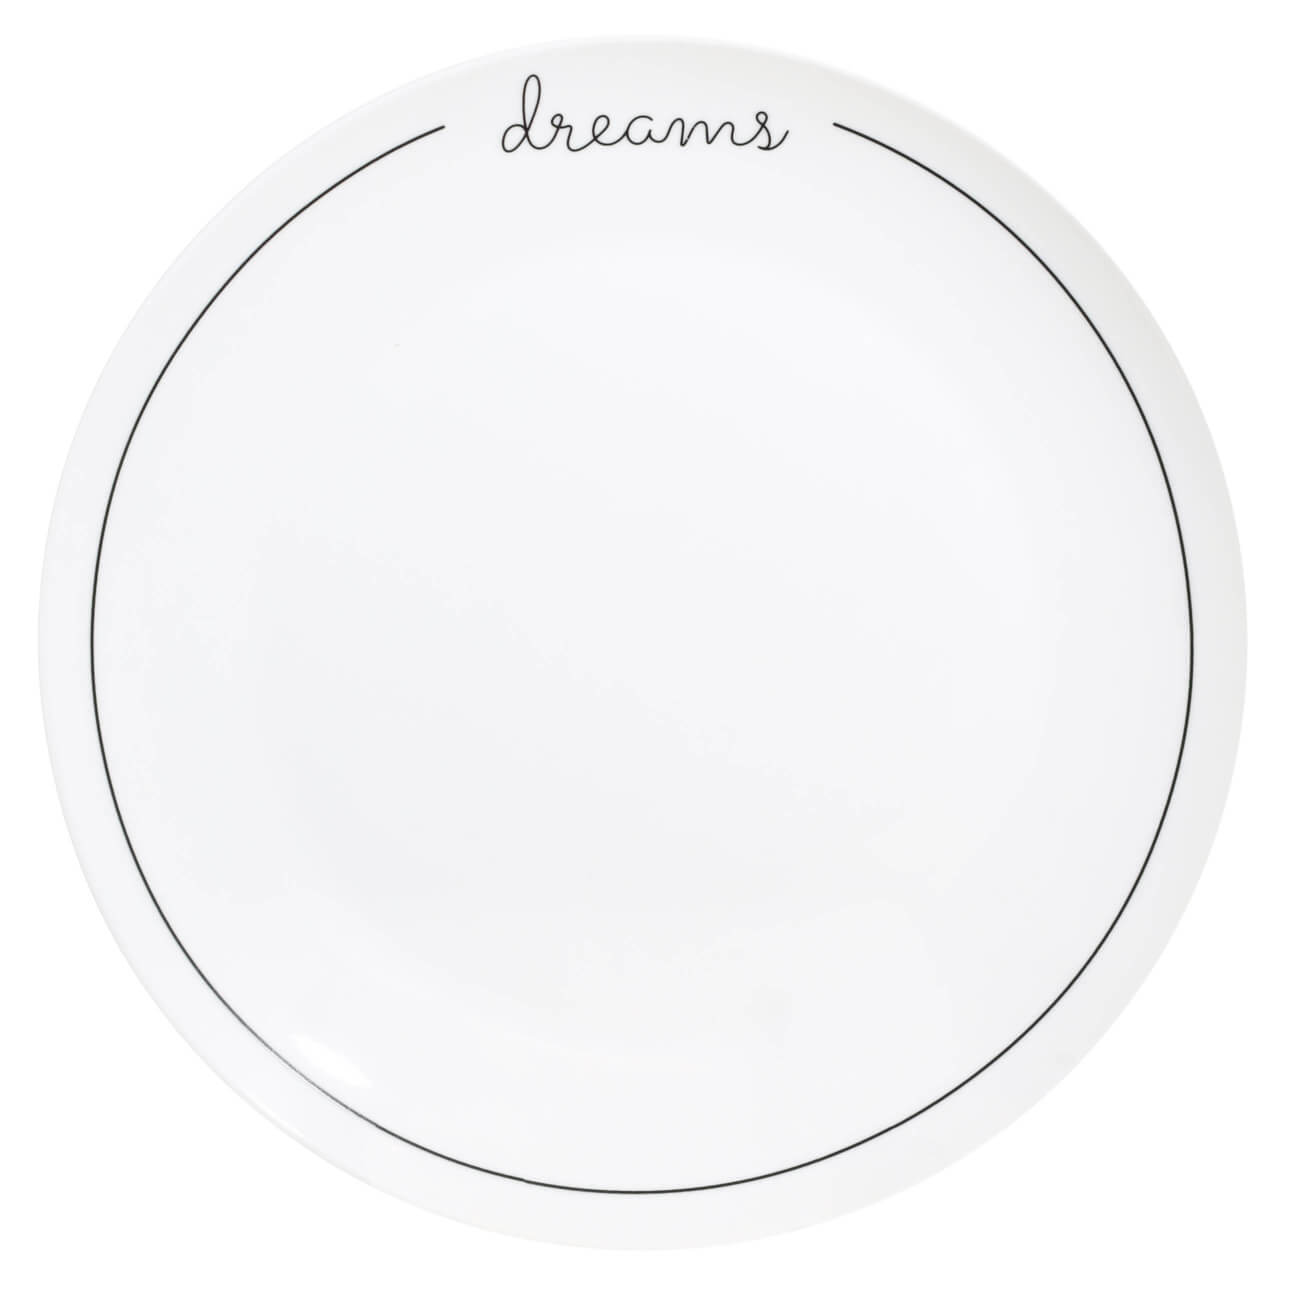 Тарелка обеденная, 27 см, фарфор N, белая, Dreams, Scroll white тарелка обеденная 25 см фарфор p белая silence